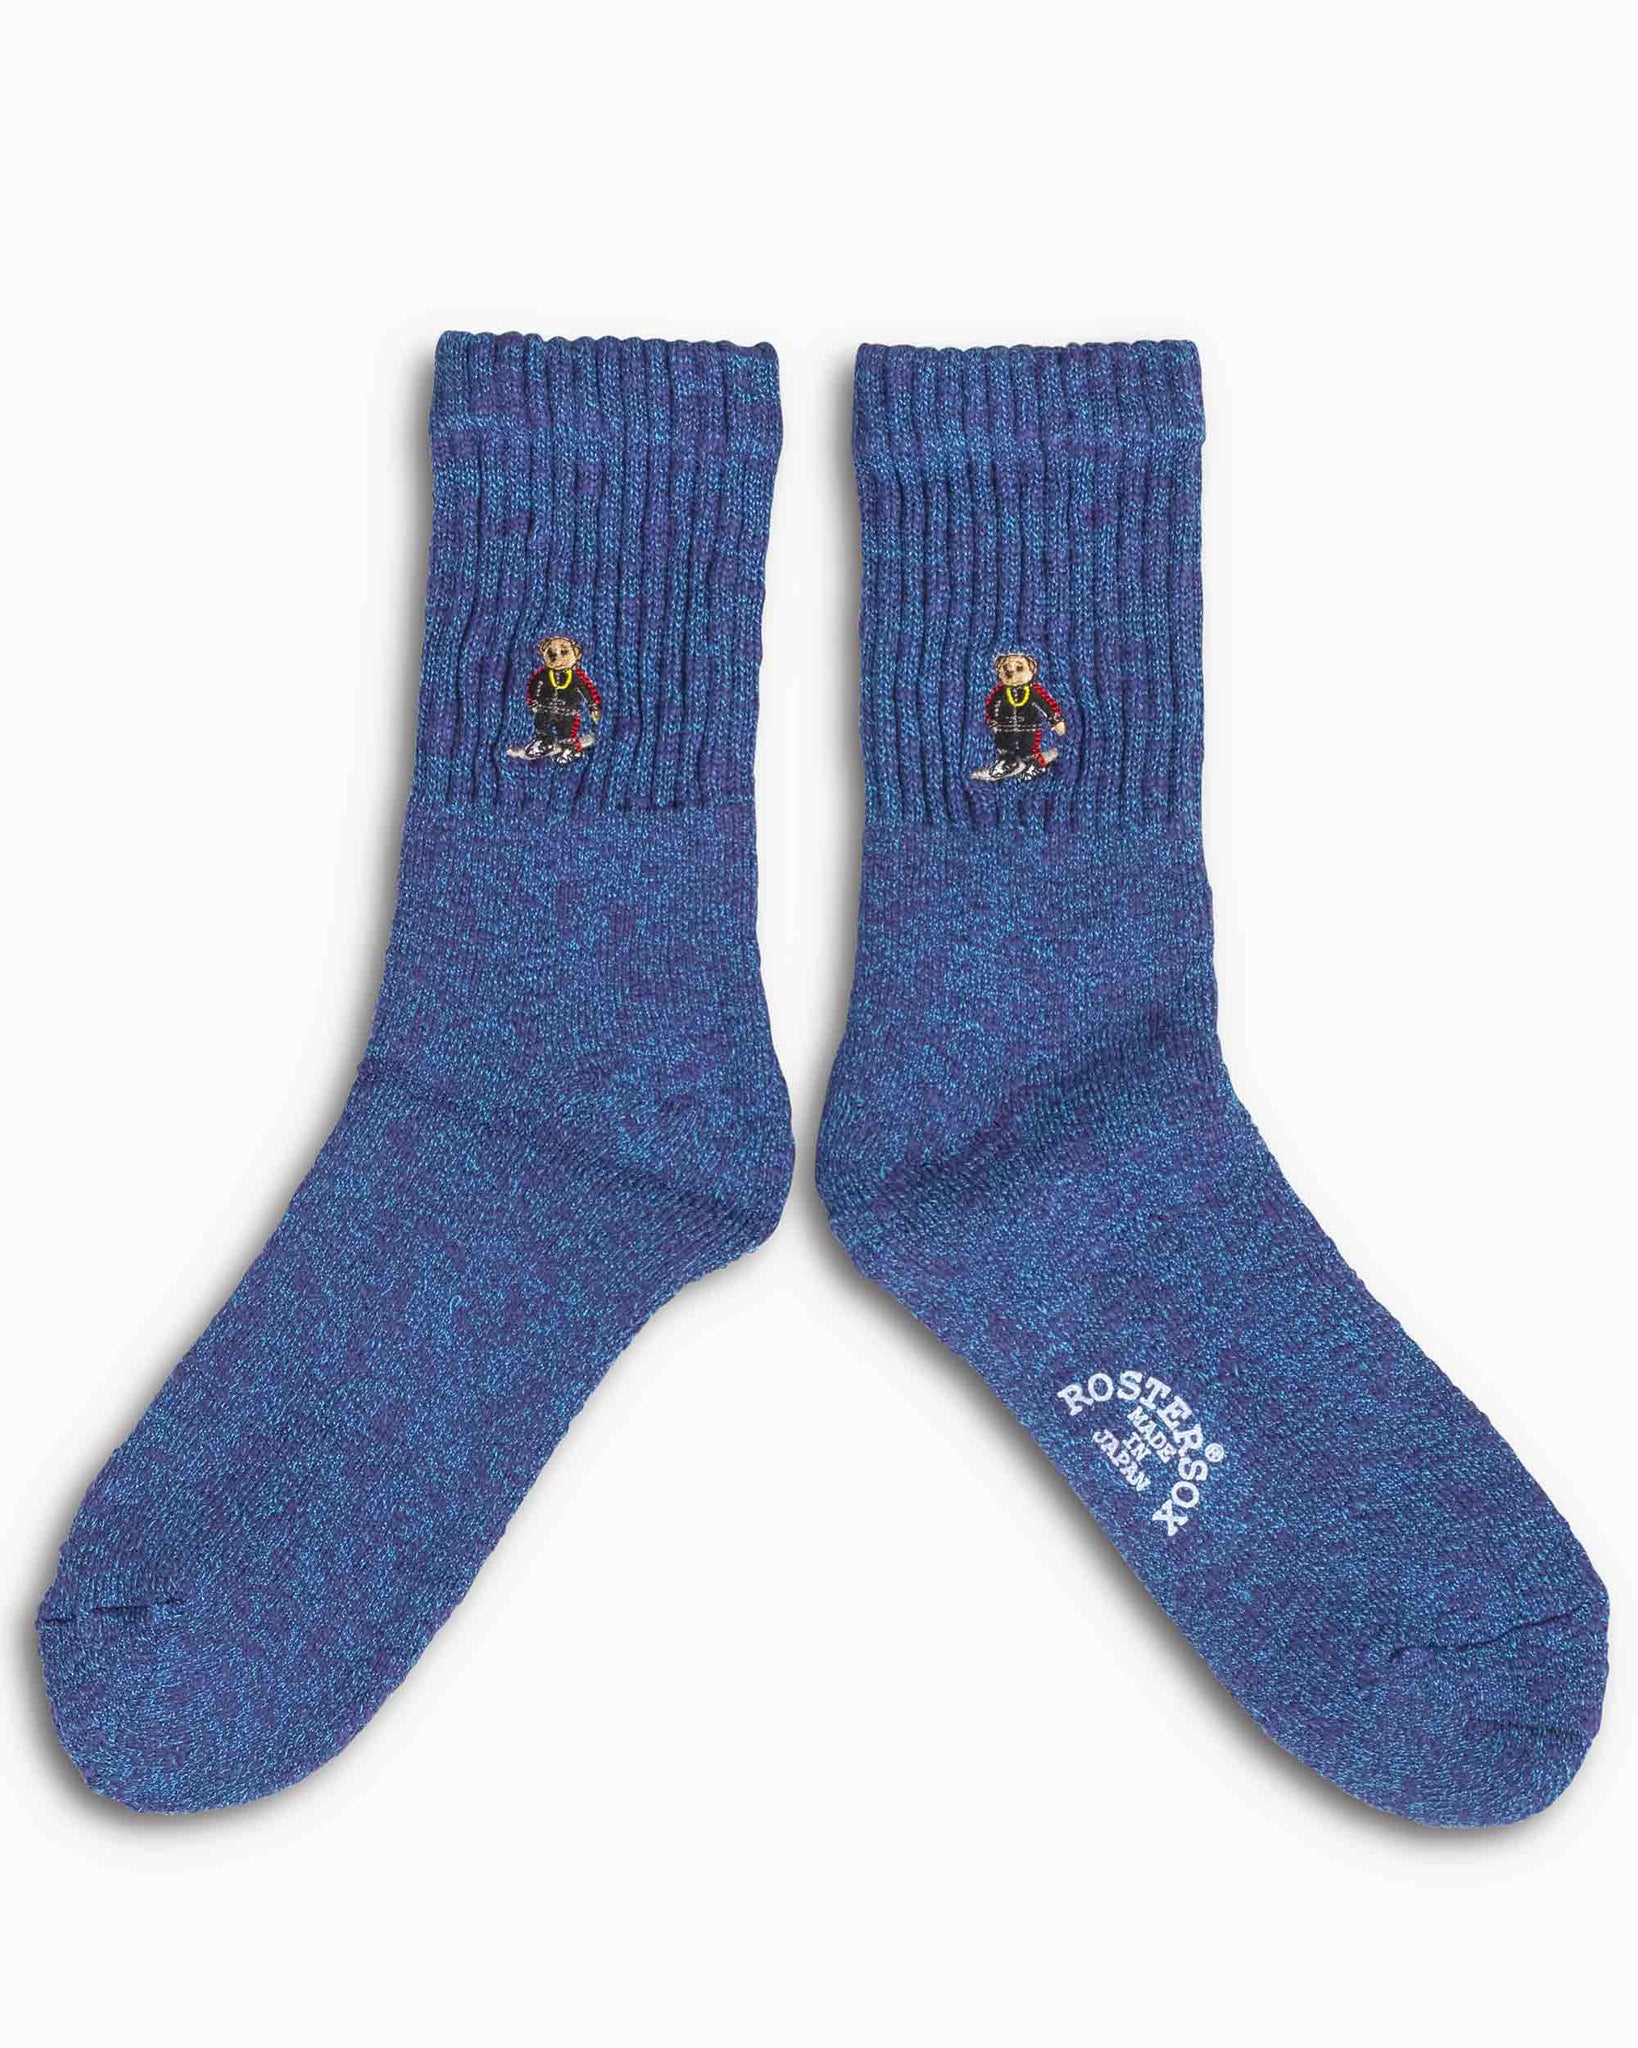 Rostersox B Bear Socks Blue